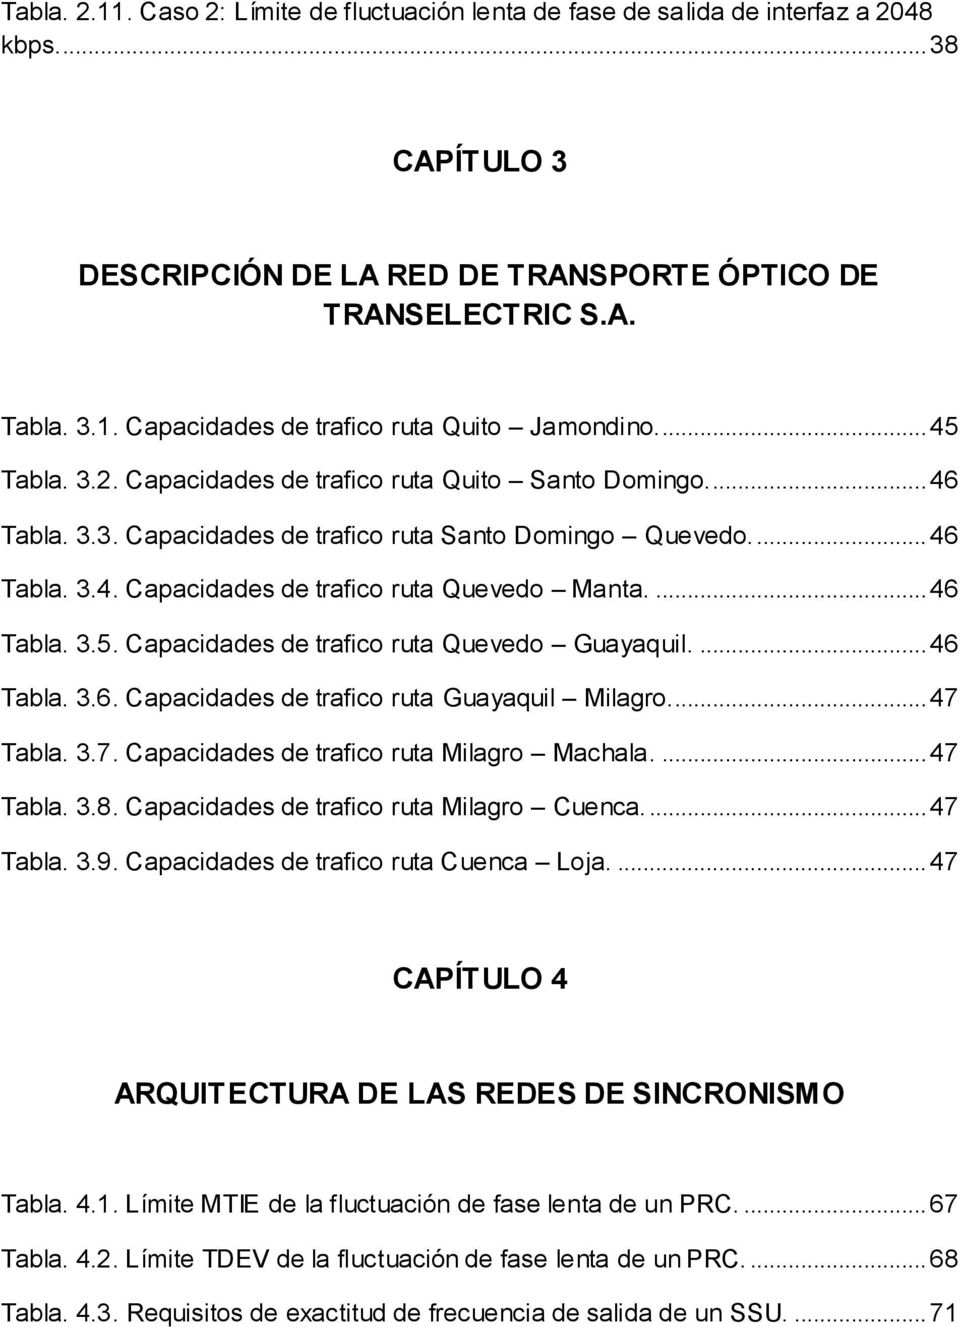 ... 46 Tabla. 3.5. Capacidades de trafico ruta Quevedo Guayaquil.... 46 Tabla. 3.6. Capacidades de trafico ruta Guayaquil Milagro... 47 Tabla. 3.7. Capacidades de trafico ruta Milagro Machala.